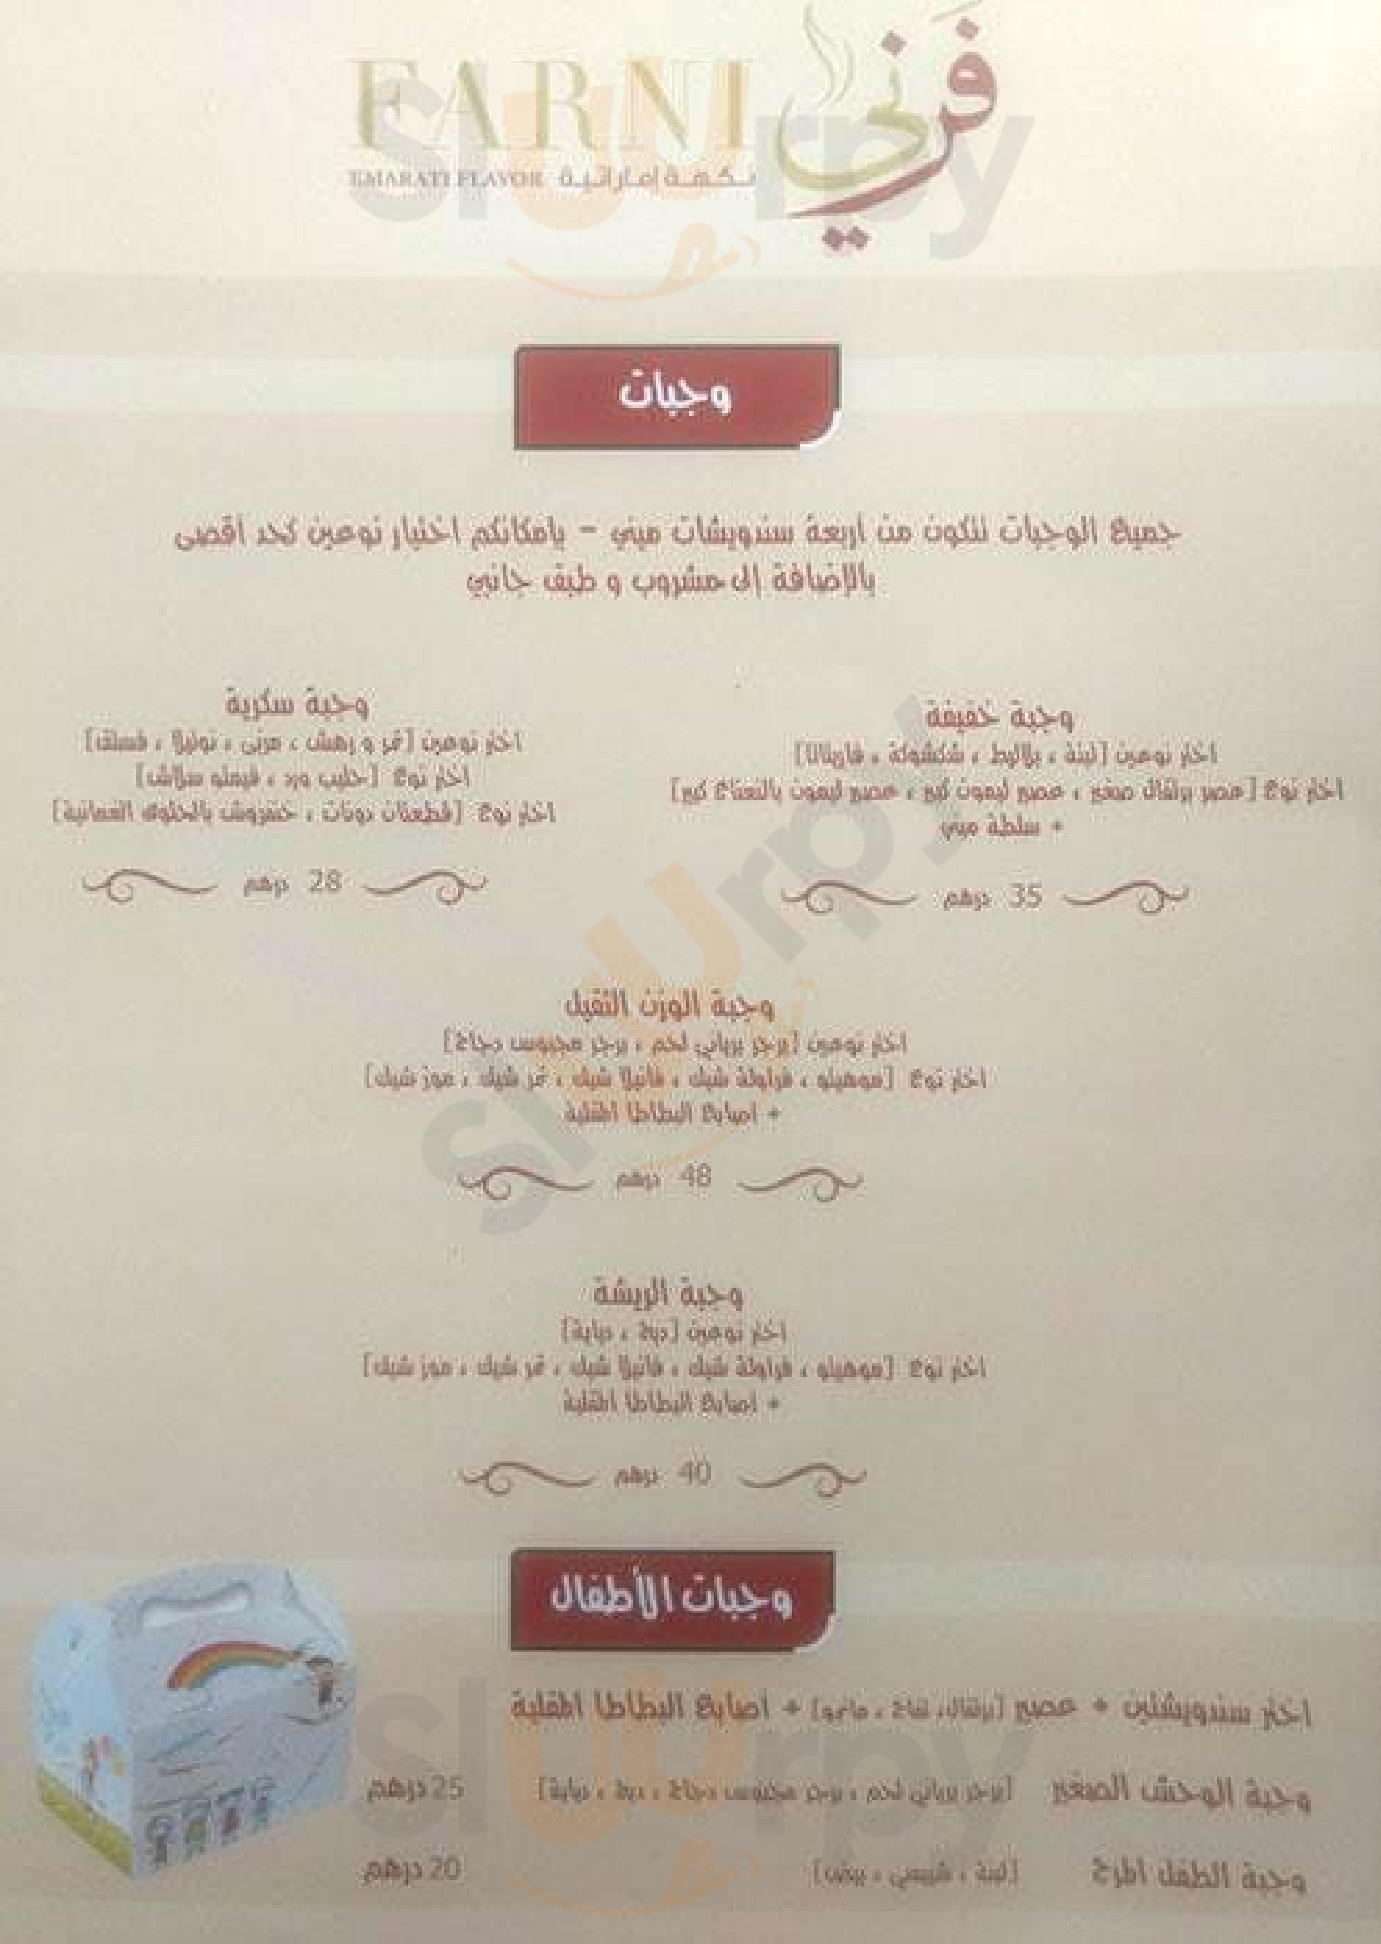 ‪farni Cafe‬ أبو ظبي Menu - 1